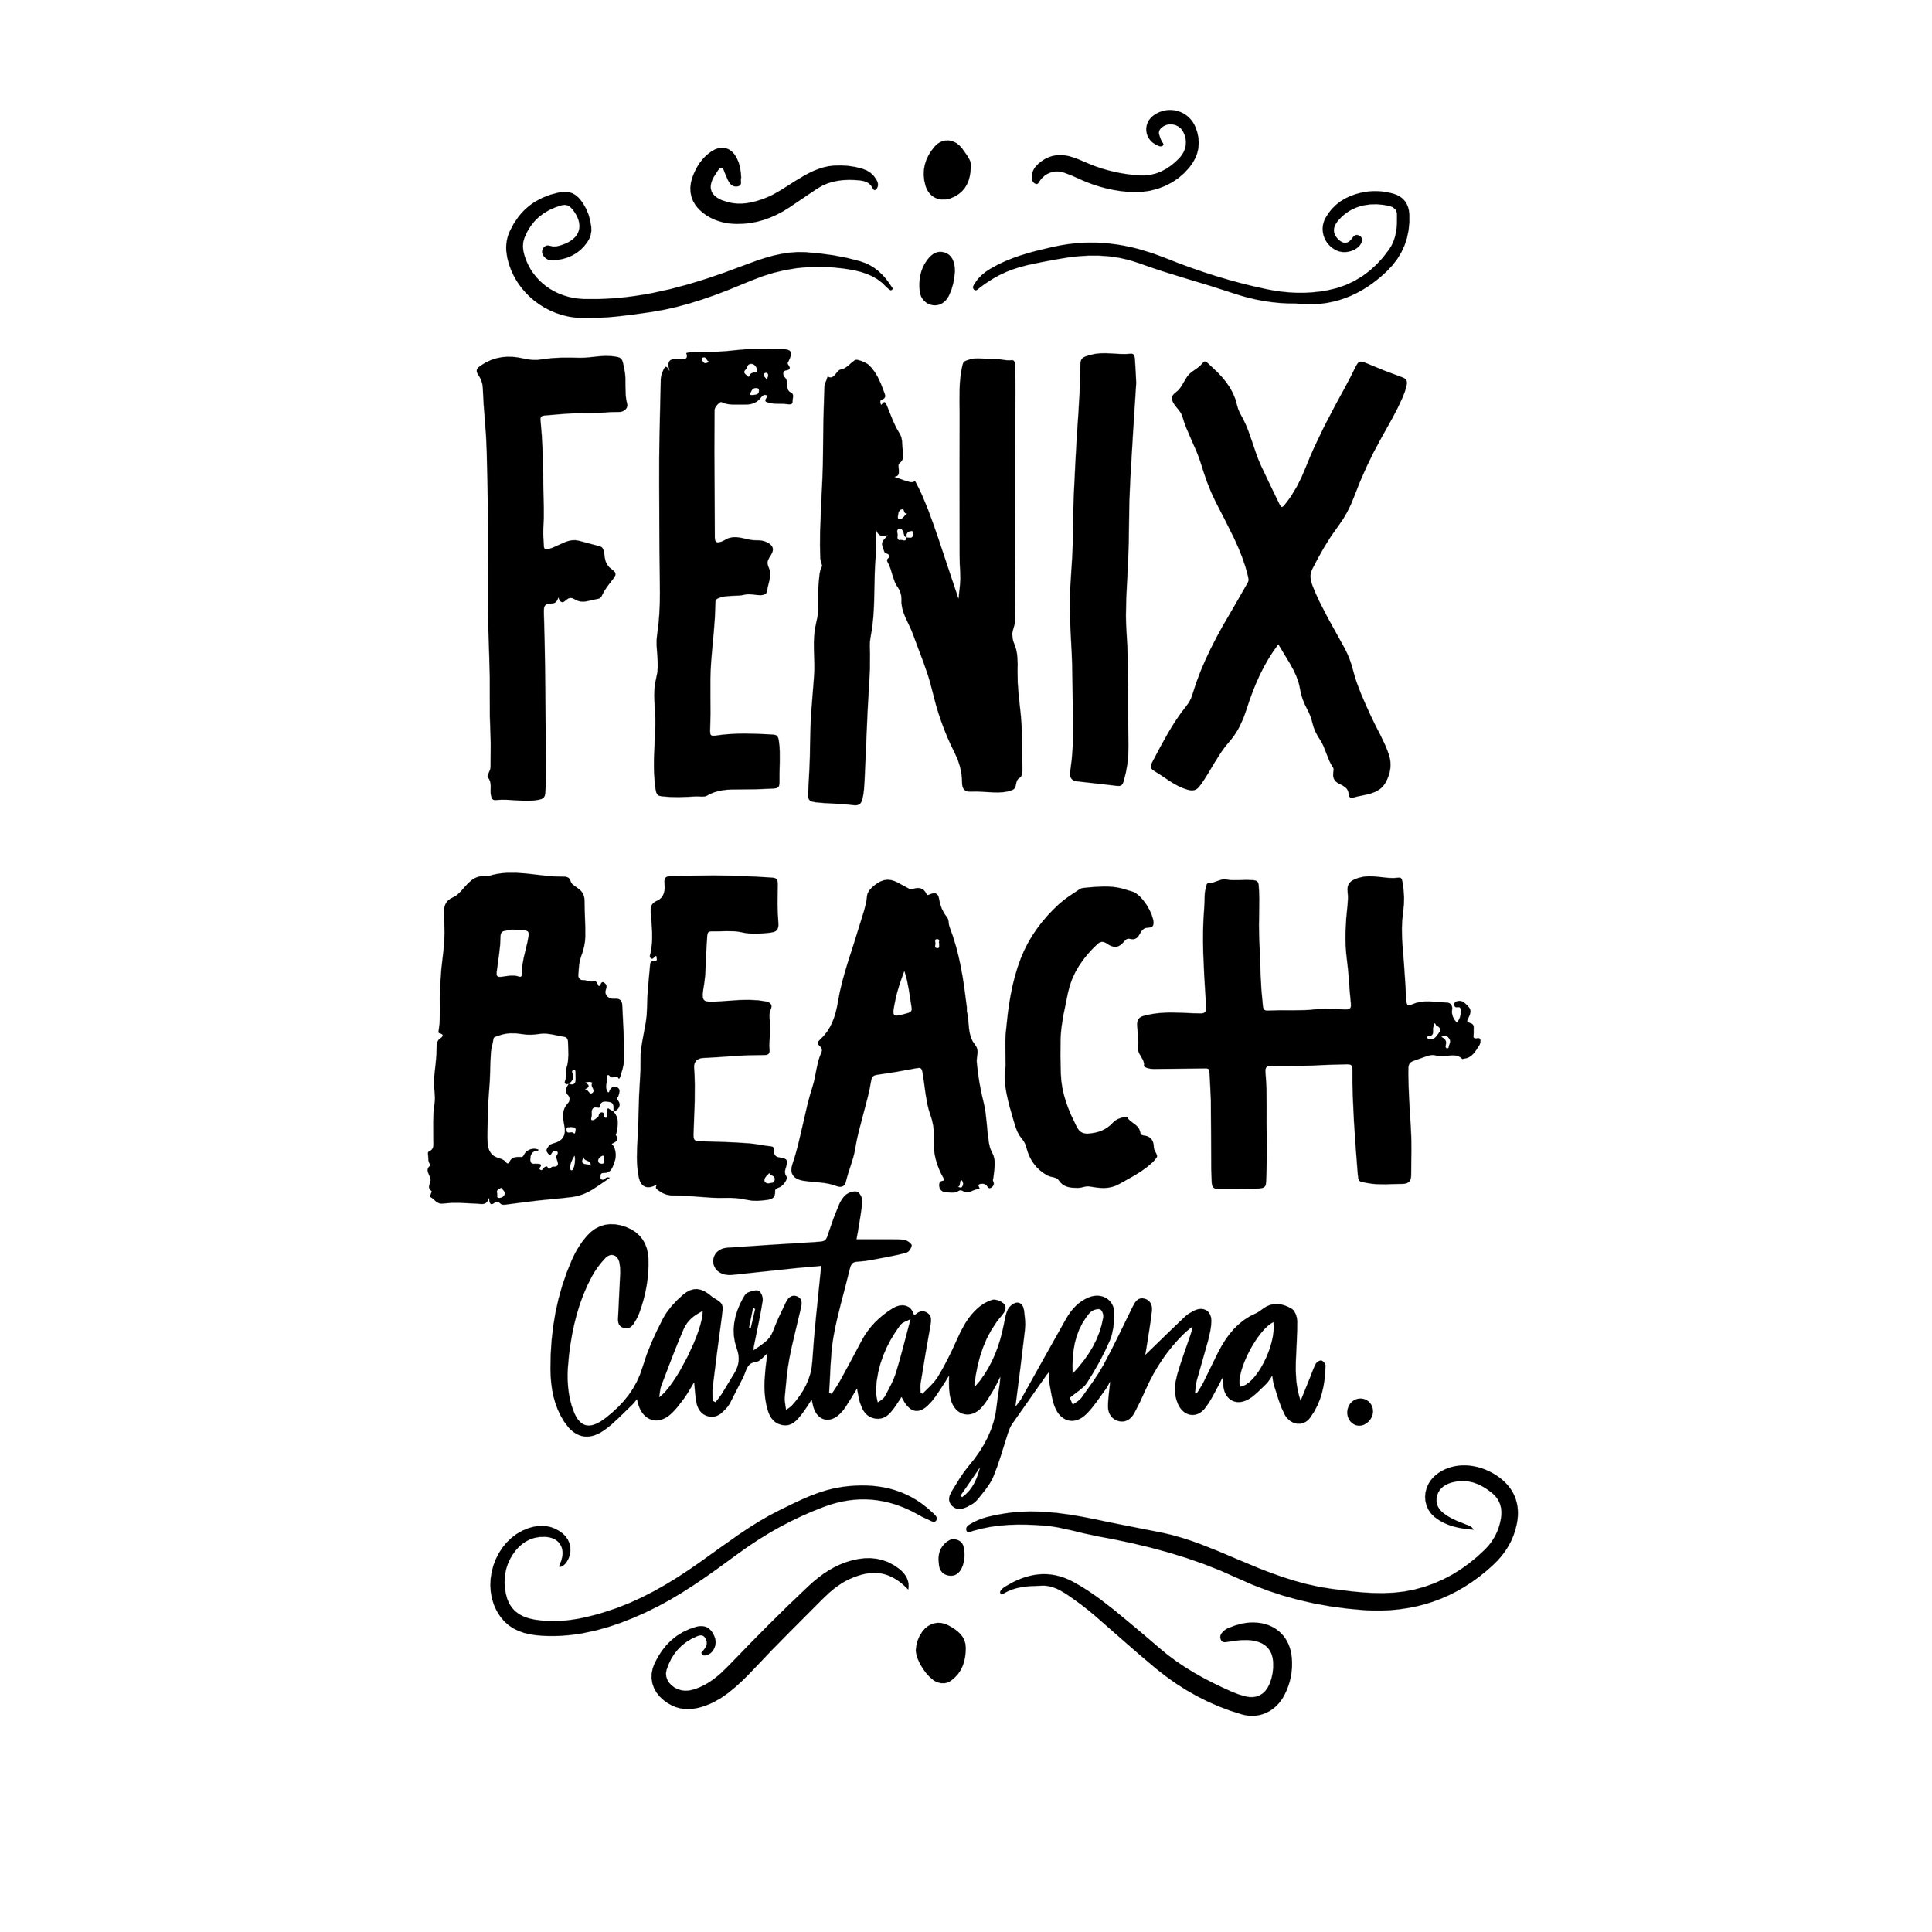 Fenix Beach Cartagena (Copy)